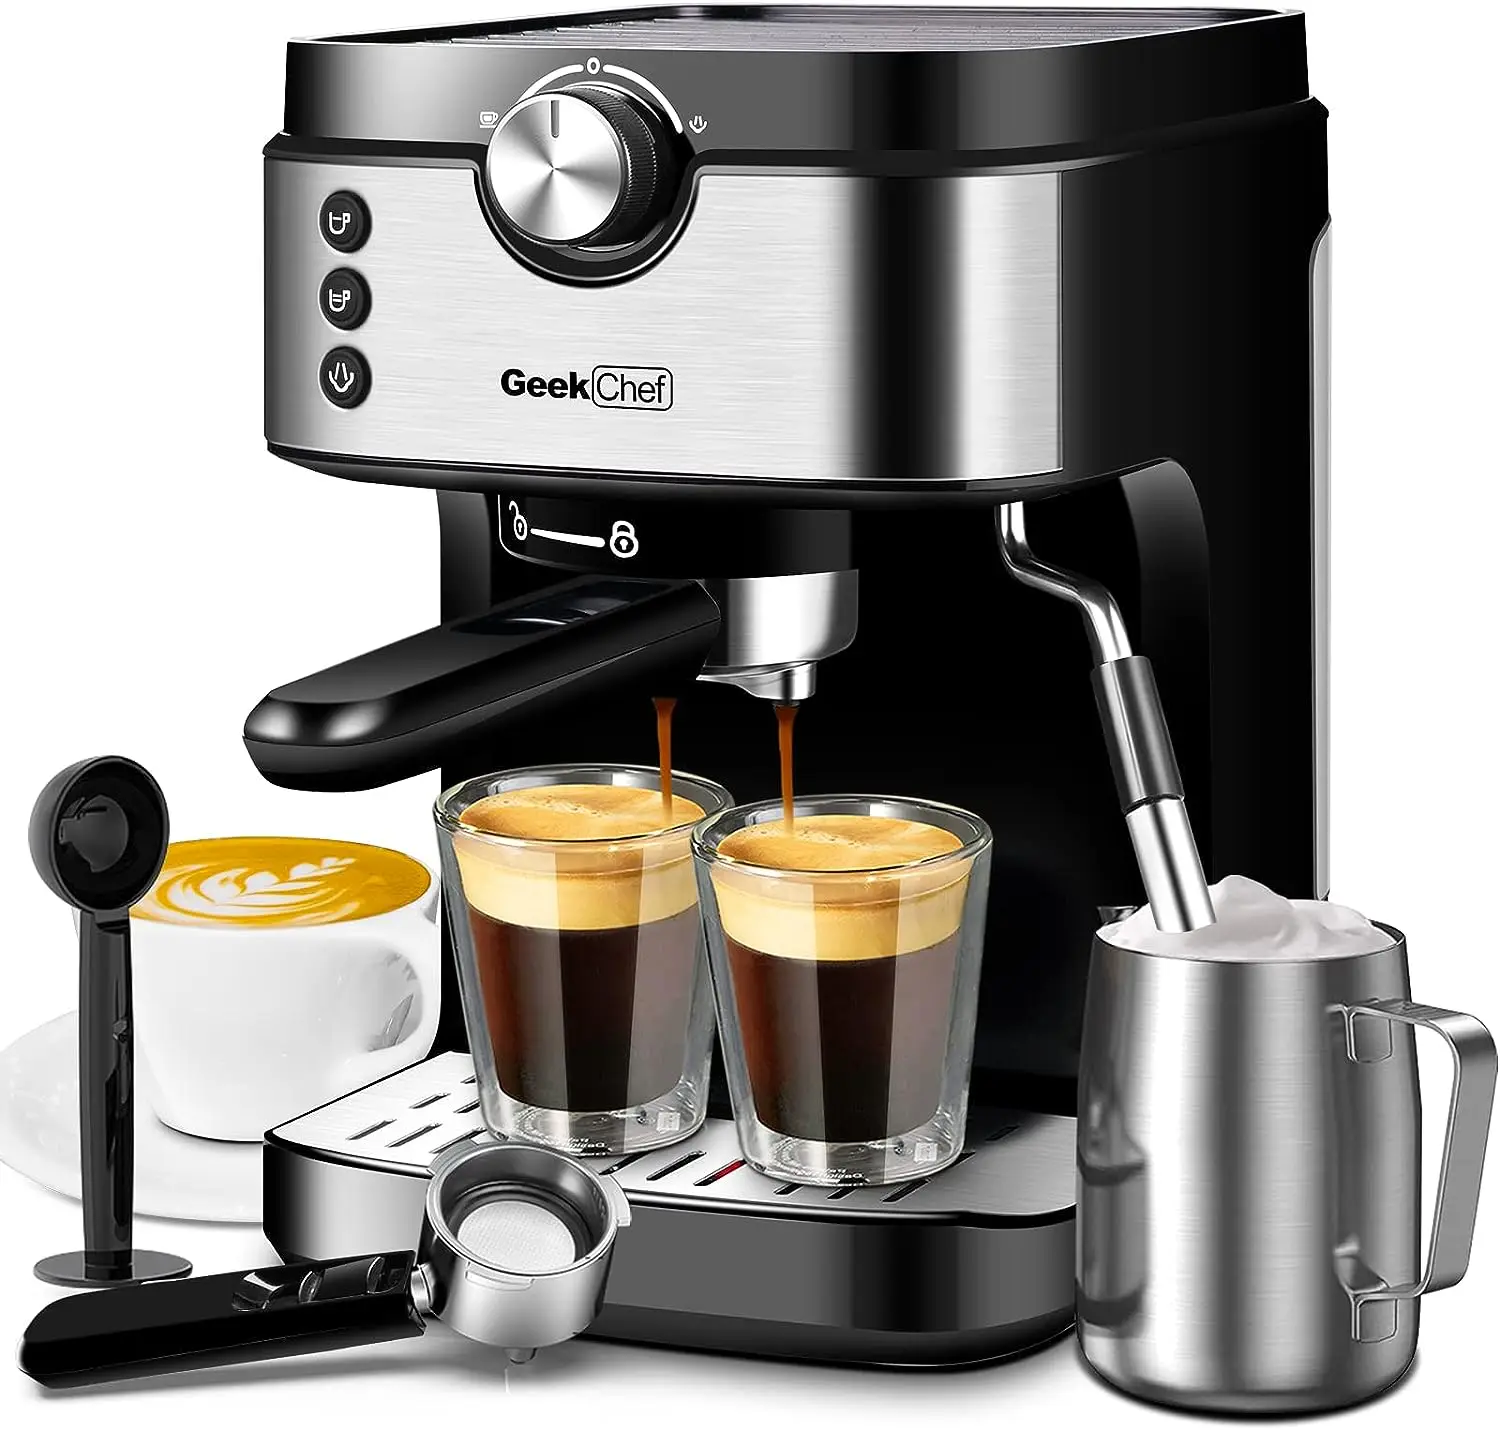 

Chef Espresso Coffee Machine Milk Frother Wand 15 , High Performance 1300W For Espresso, Cappuccino, Latte, Machiato, For Home B